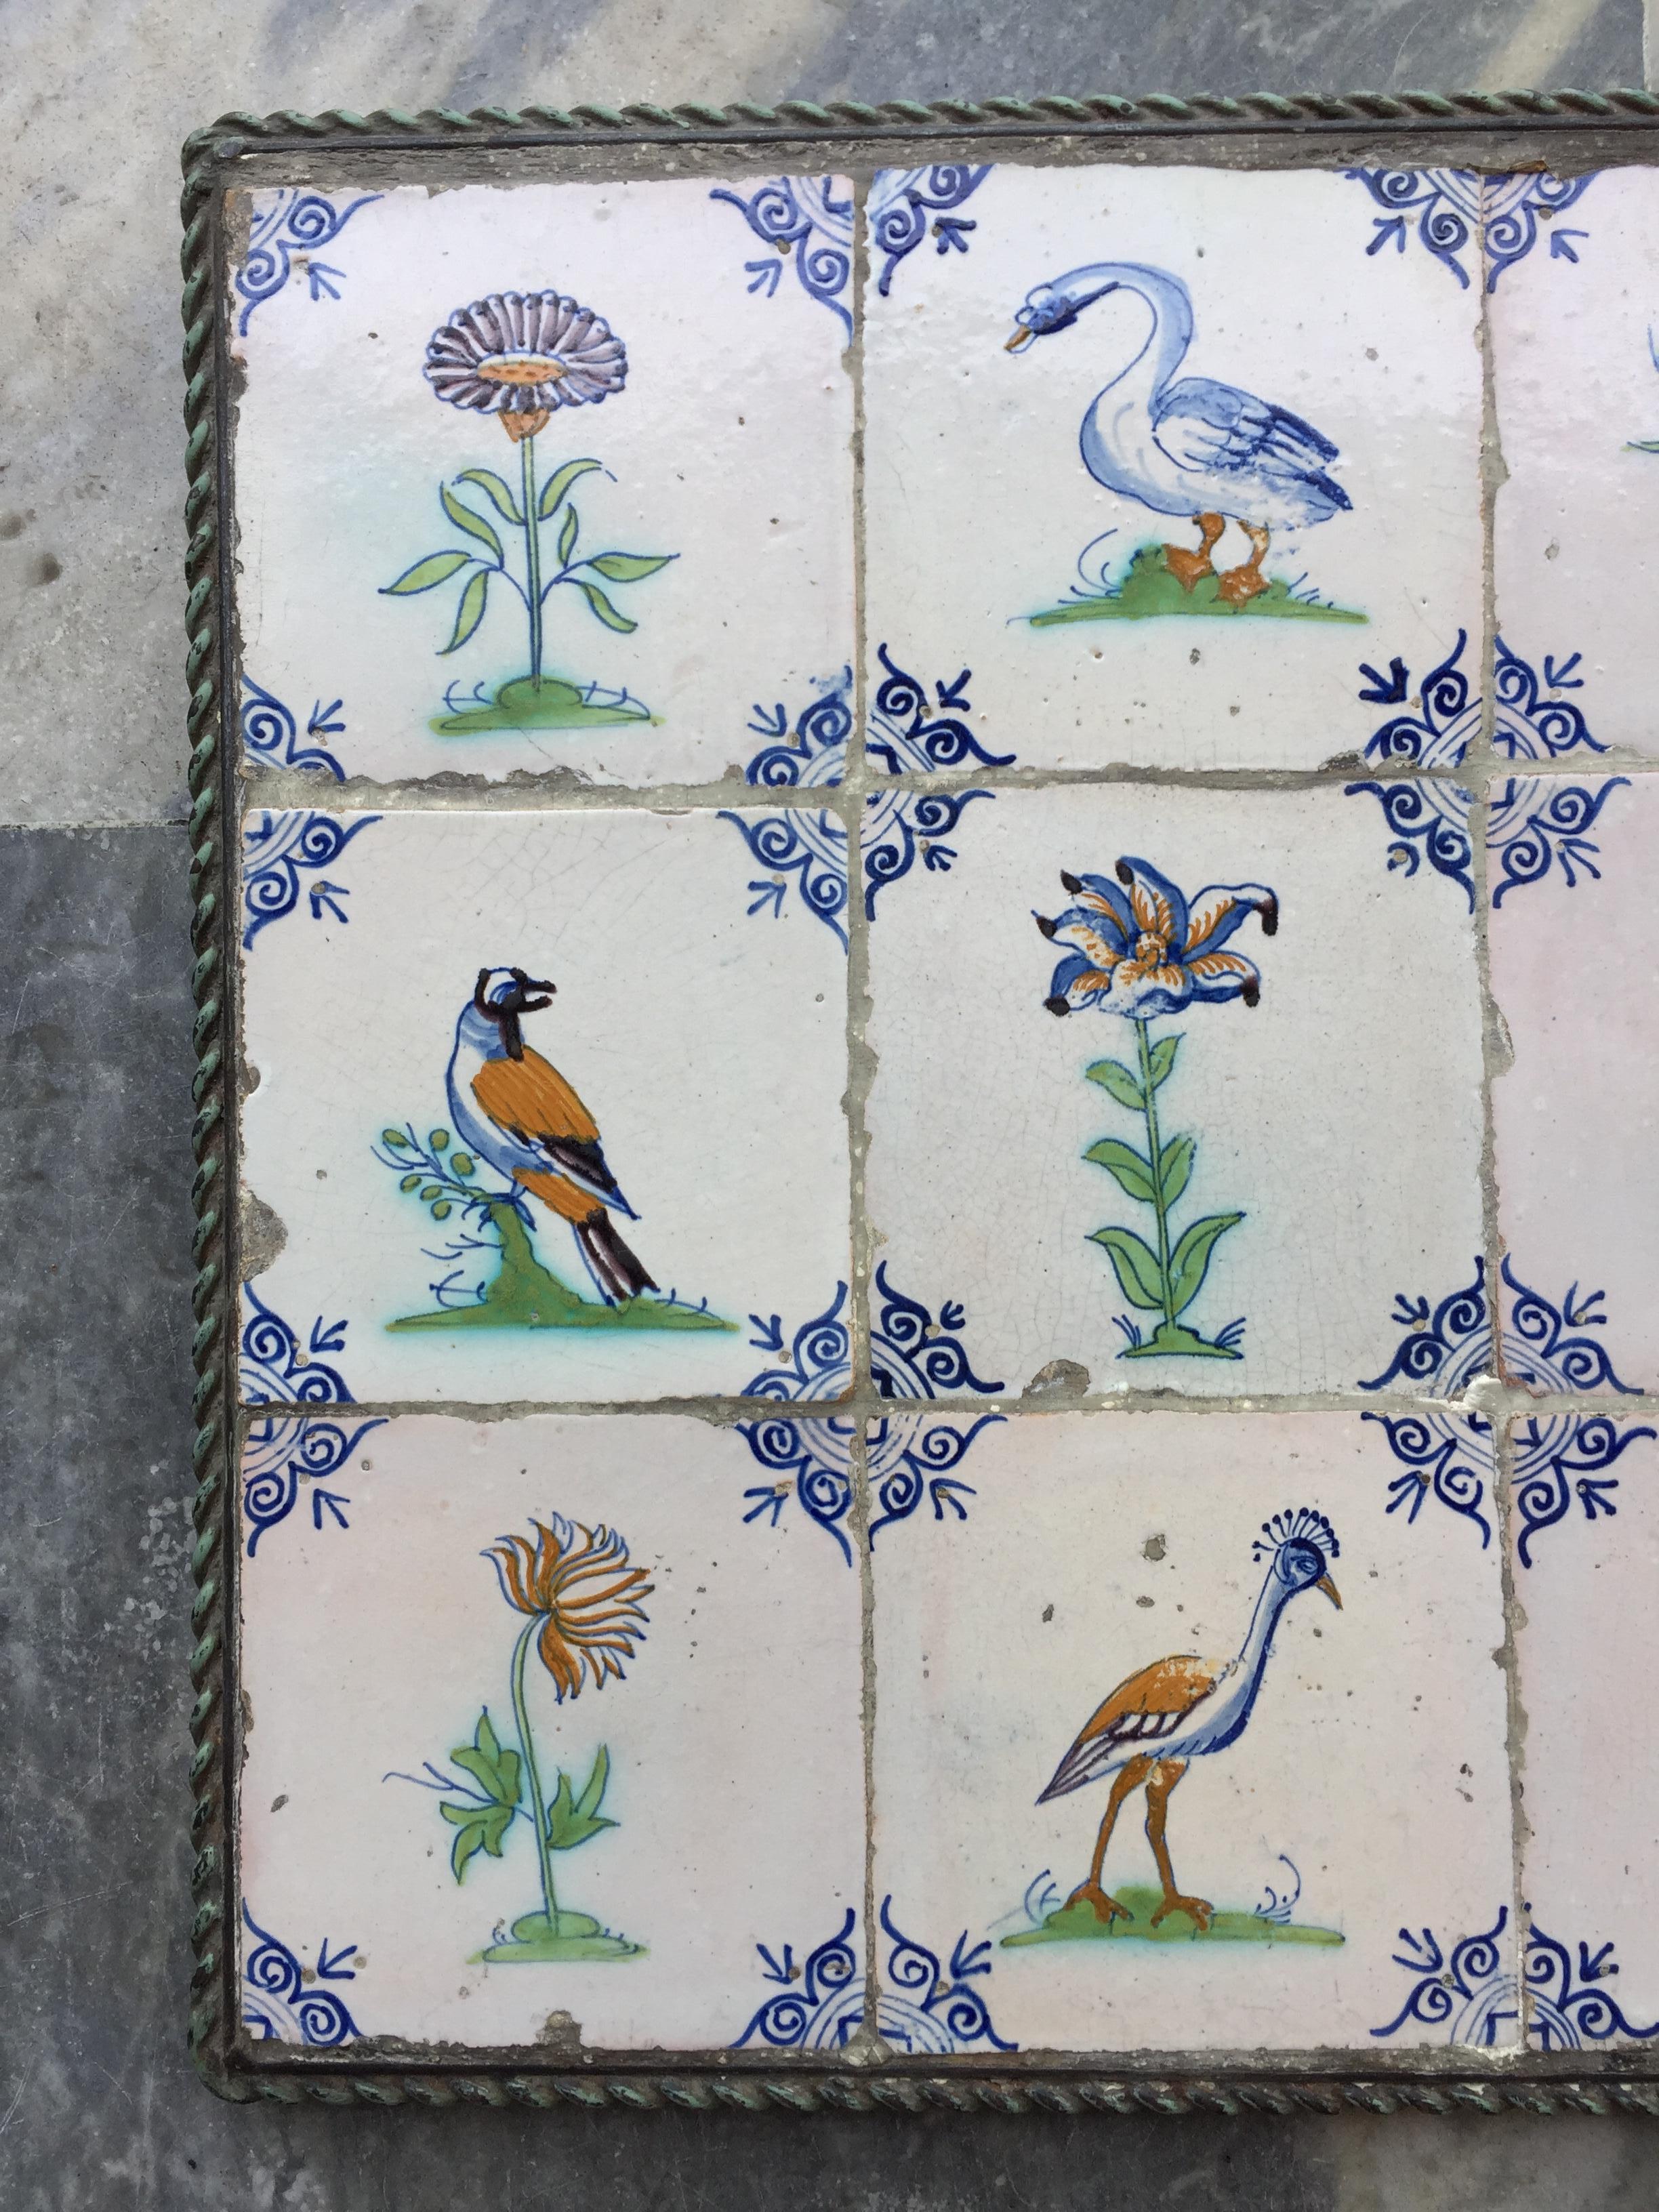 Ein außergewöhnlicher Satz von 15 polychromen niederländischen Delft-Fliesen mit Vögeln, Blumen und Insekten. 
Hergestellt in den Niederlanden, ca. 1625 - 1650.

Dieses Fliesenset ist von sehr guter Qualität und hat eine wunderbare helle Glasur. Die